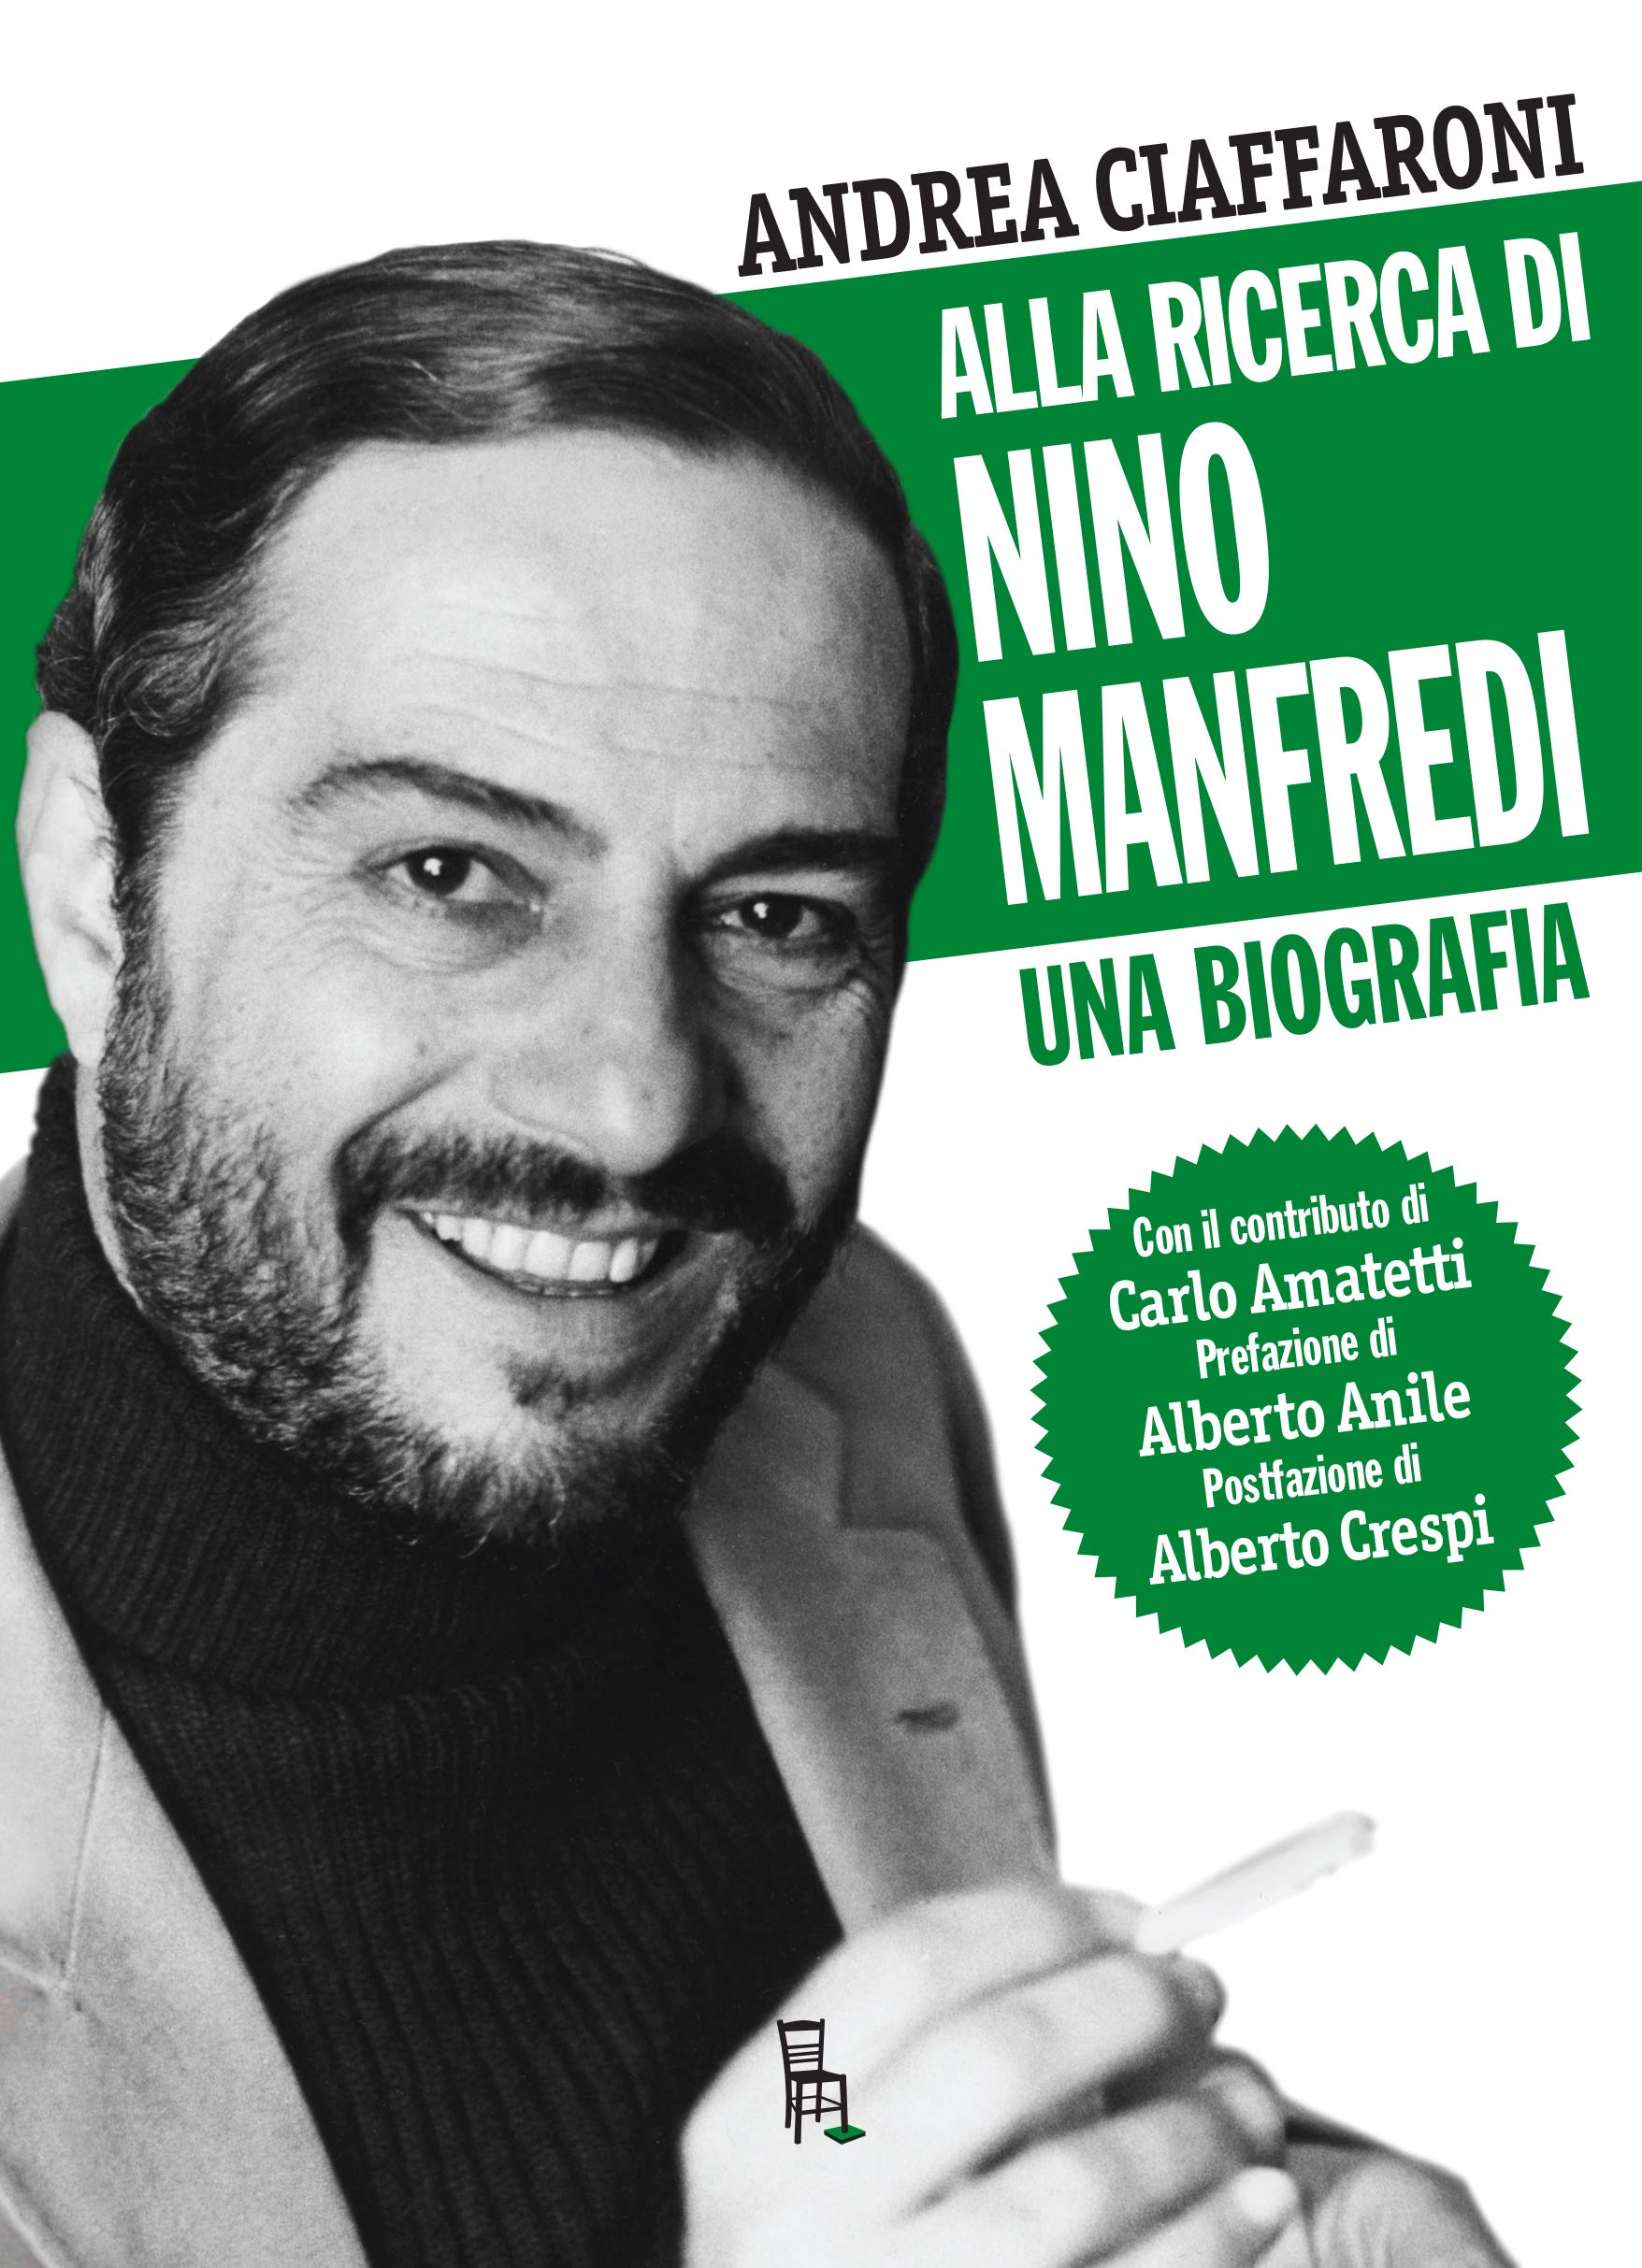 “Alla ricerca di Nino Manfredi”, la presentazione della biografia del grande attore alla Biblioteca di Gaeta